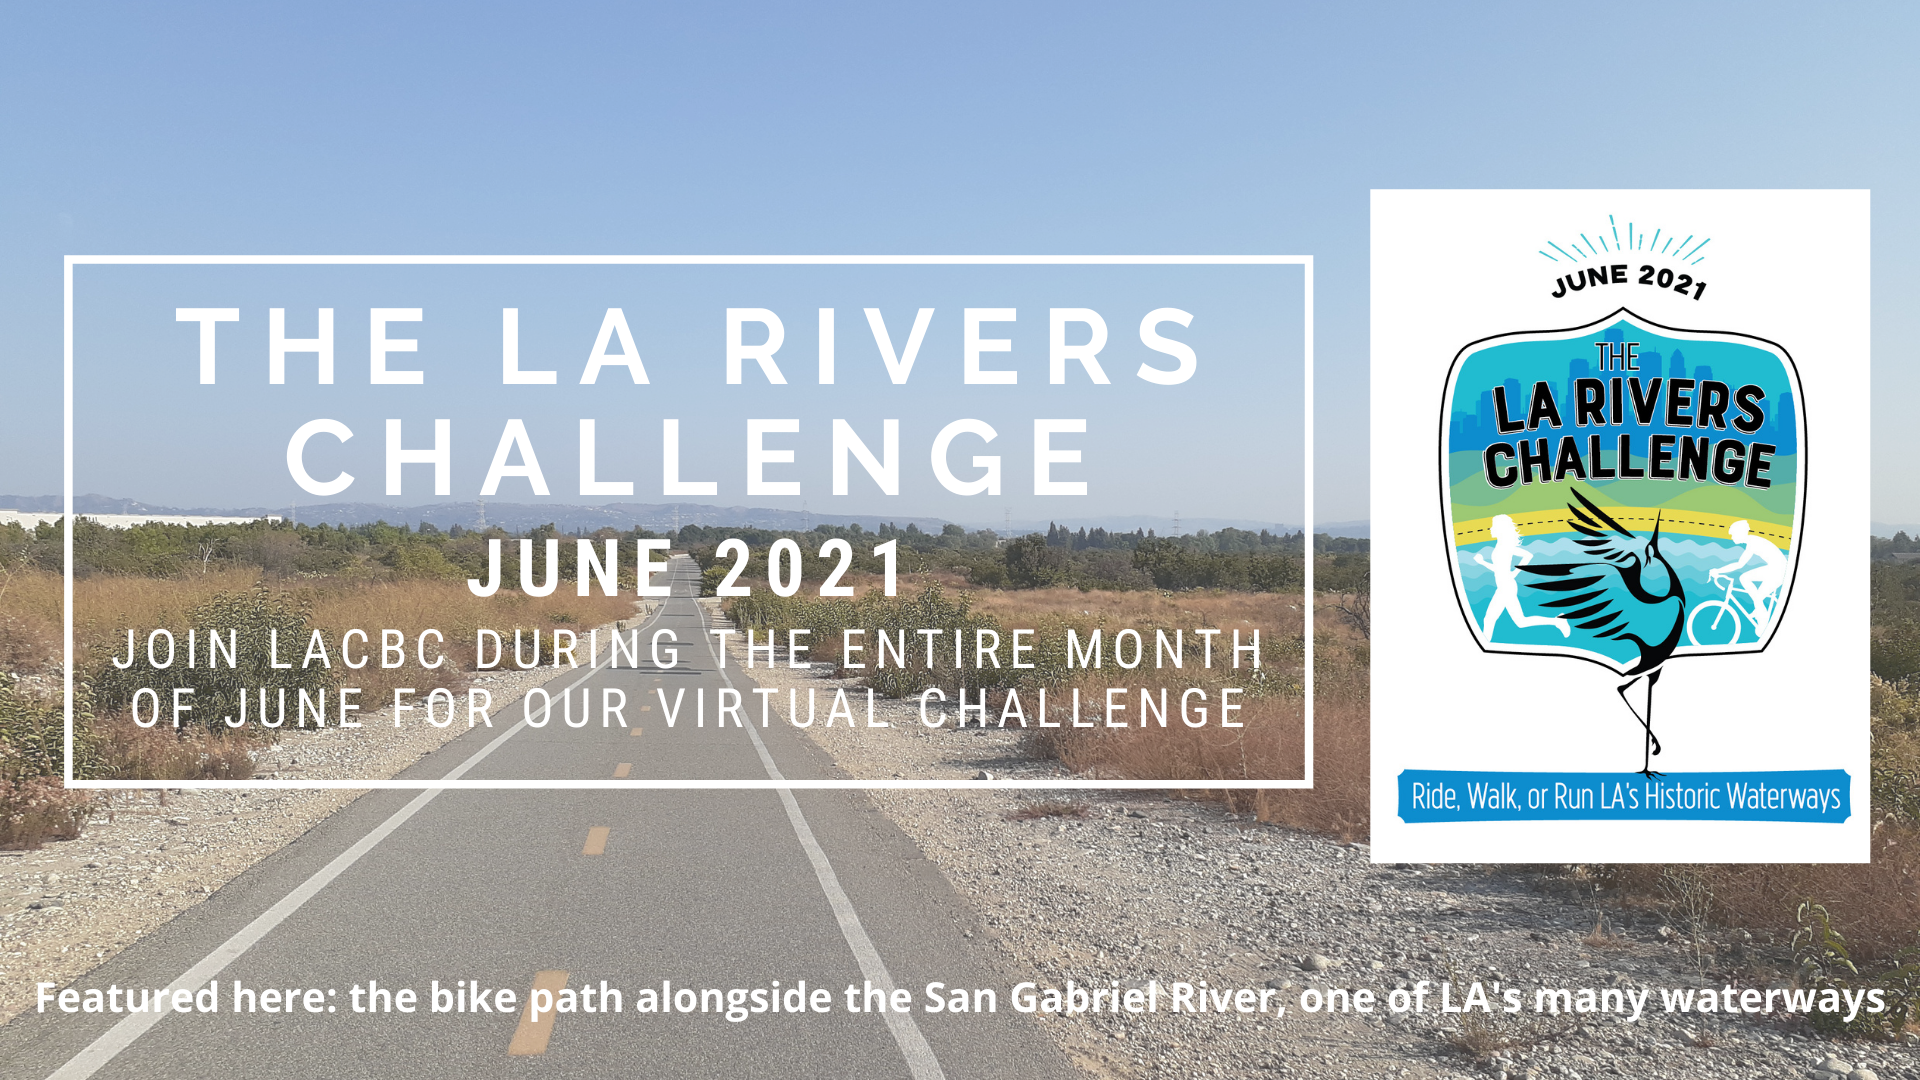 LA Rivers Challenge 2021